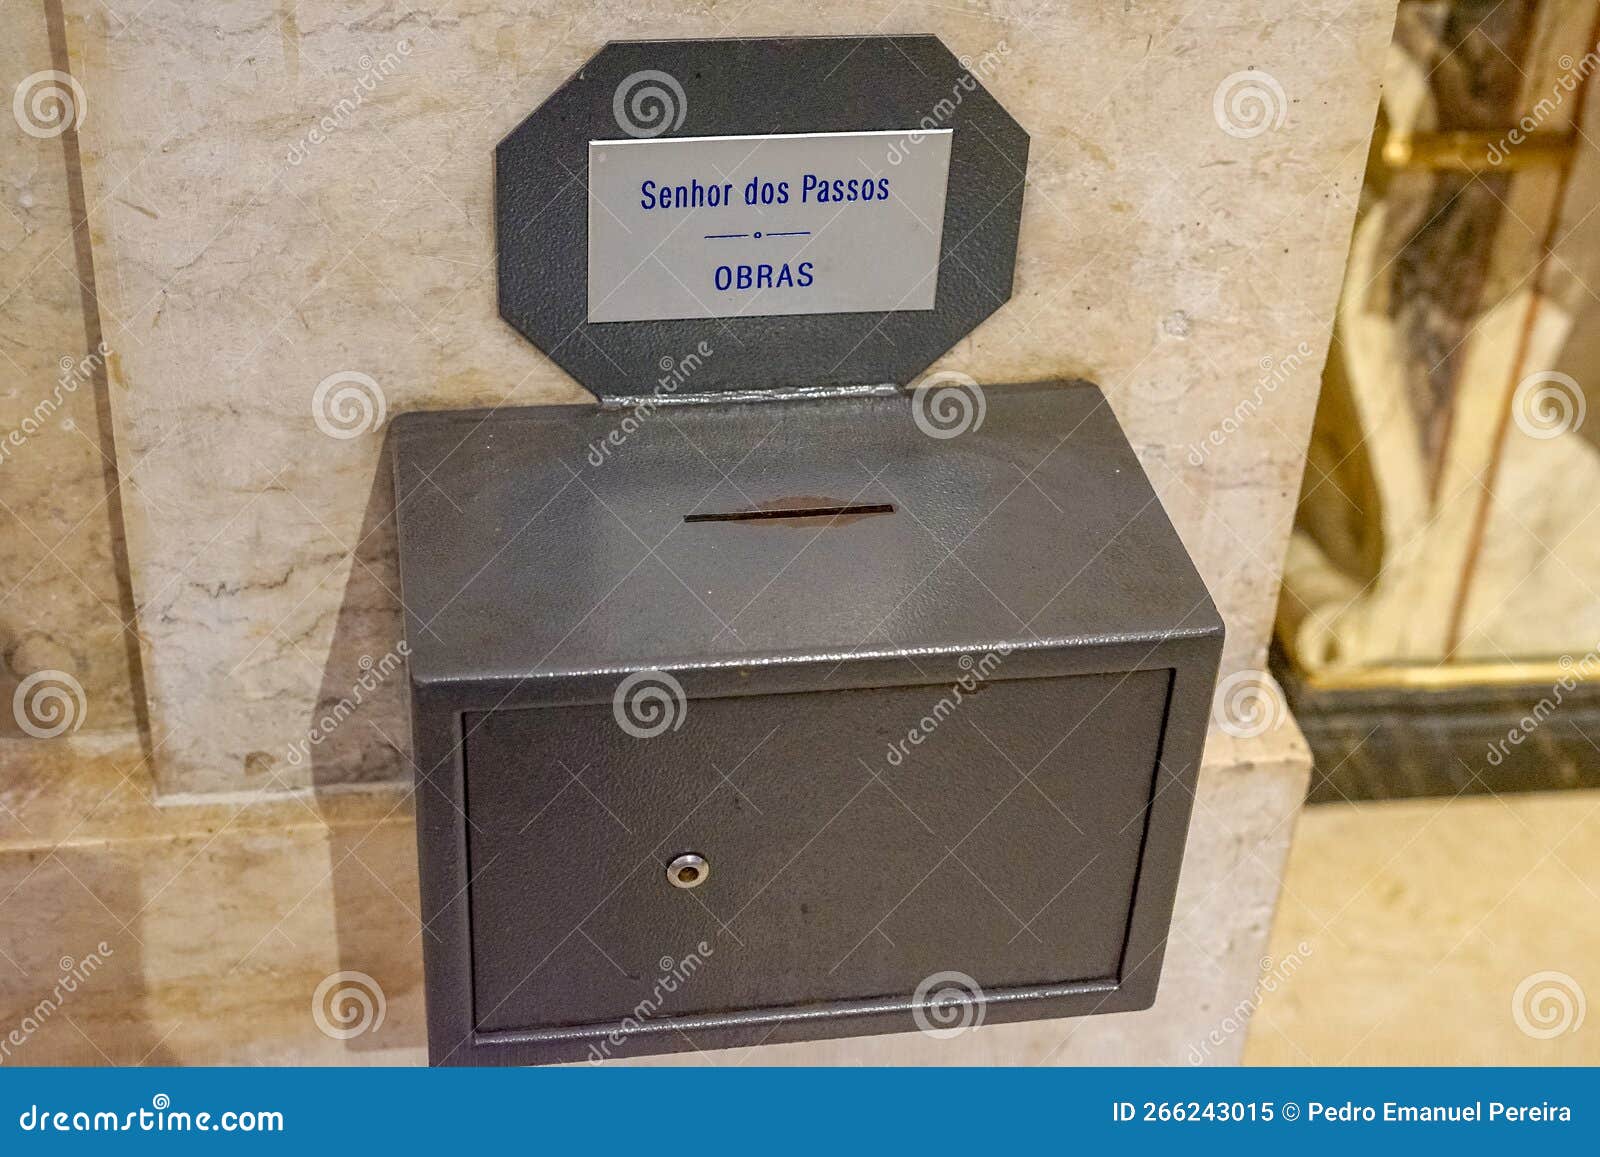 alms box for santo sÃ£o josÃ© the church of nossa senhor dos paÃ§os,velha in downtown lisbon